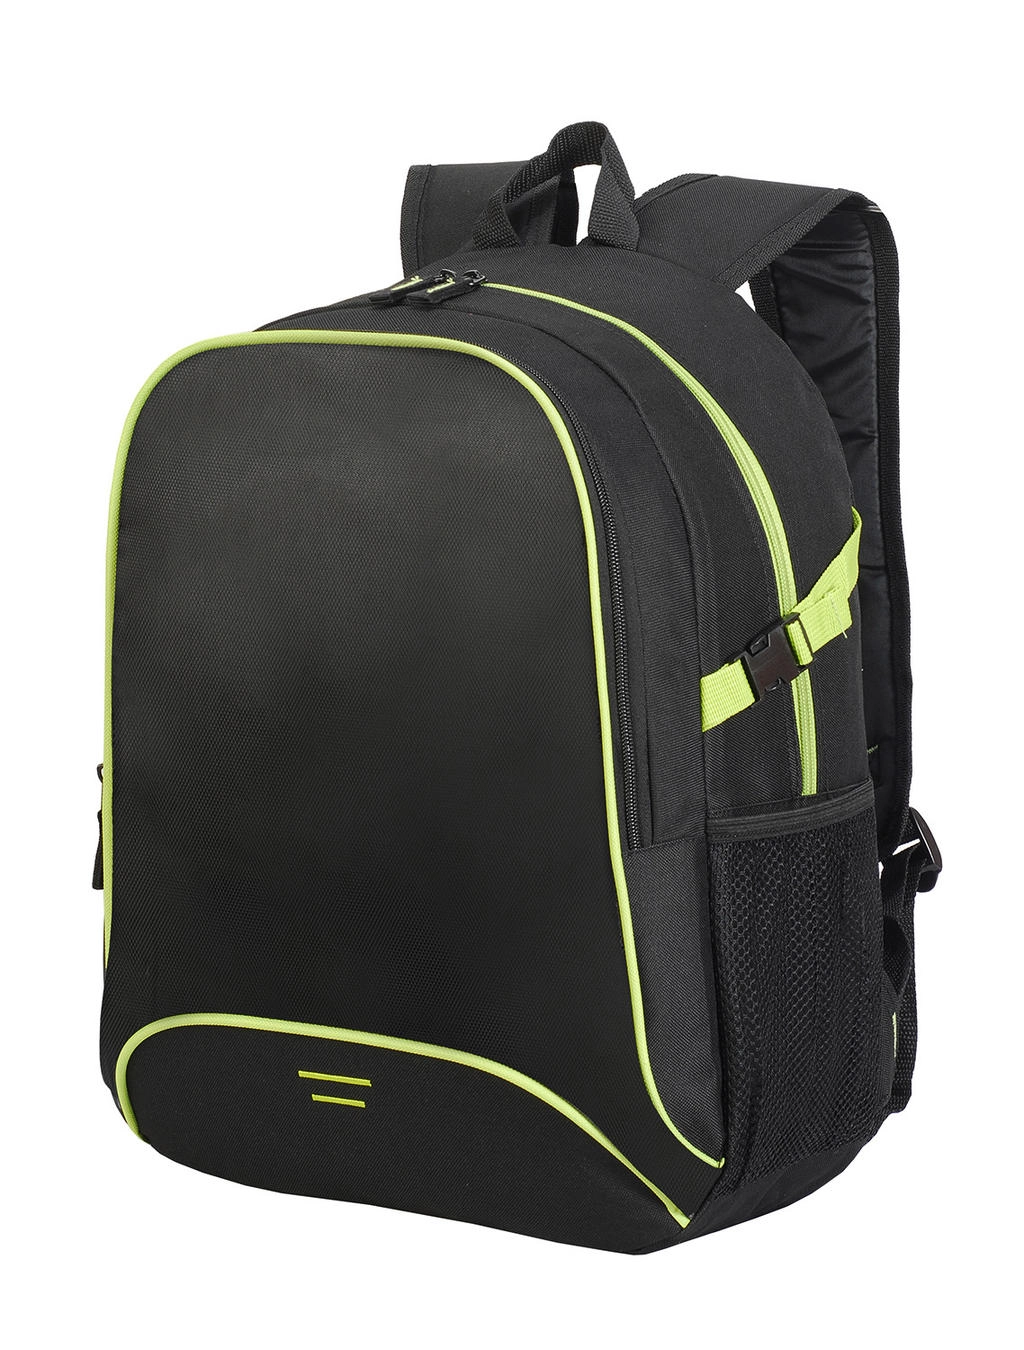 Osaka Basic Backpack zum Besticken und Bedrucken in der Farbe Black/Lime Green mit Ihren Logo, Schriftzug oder Motiv.